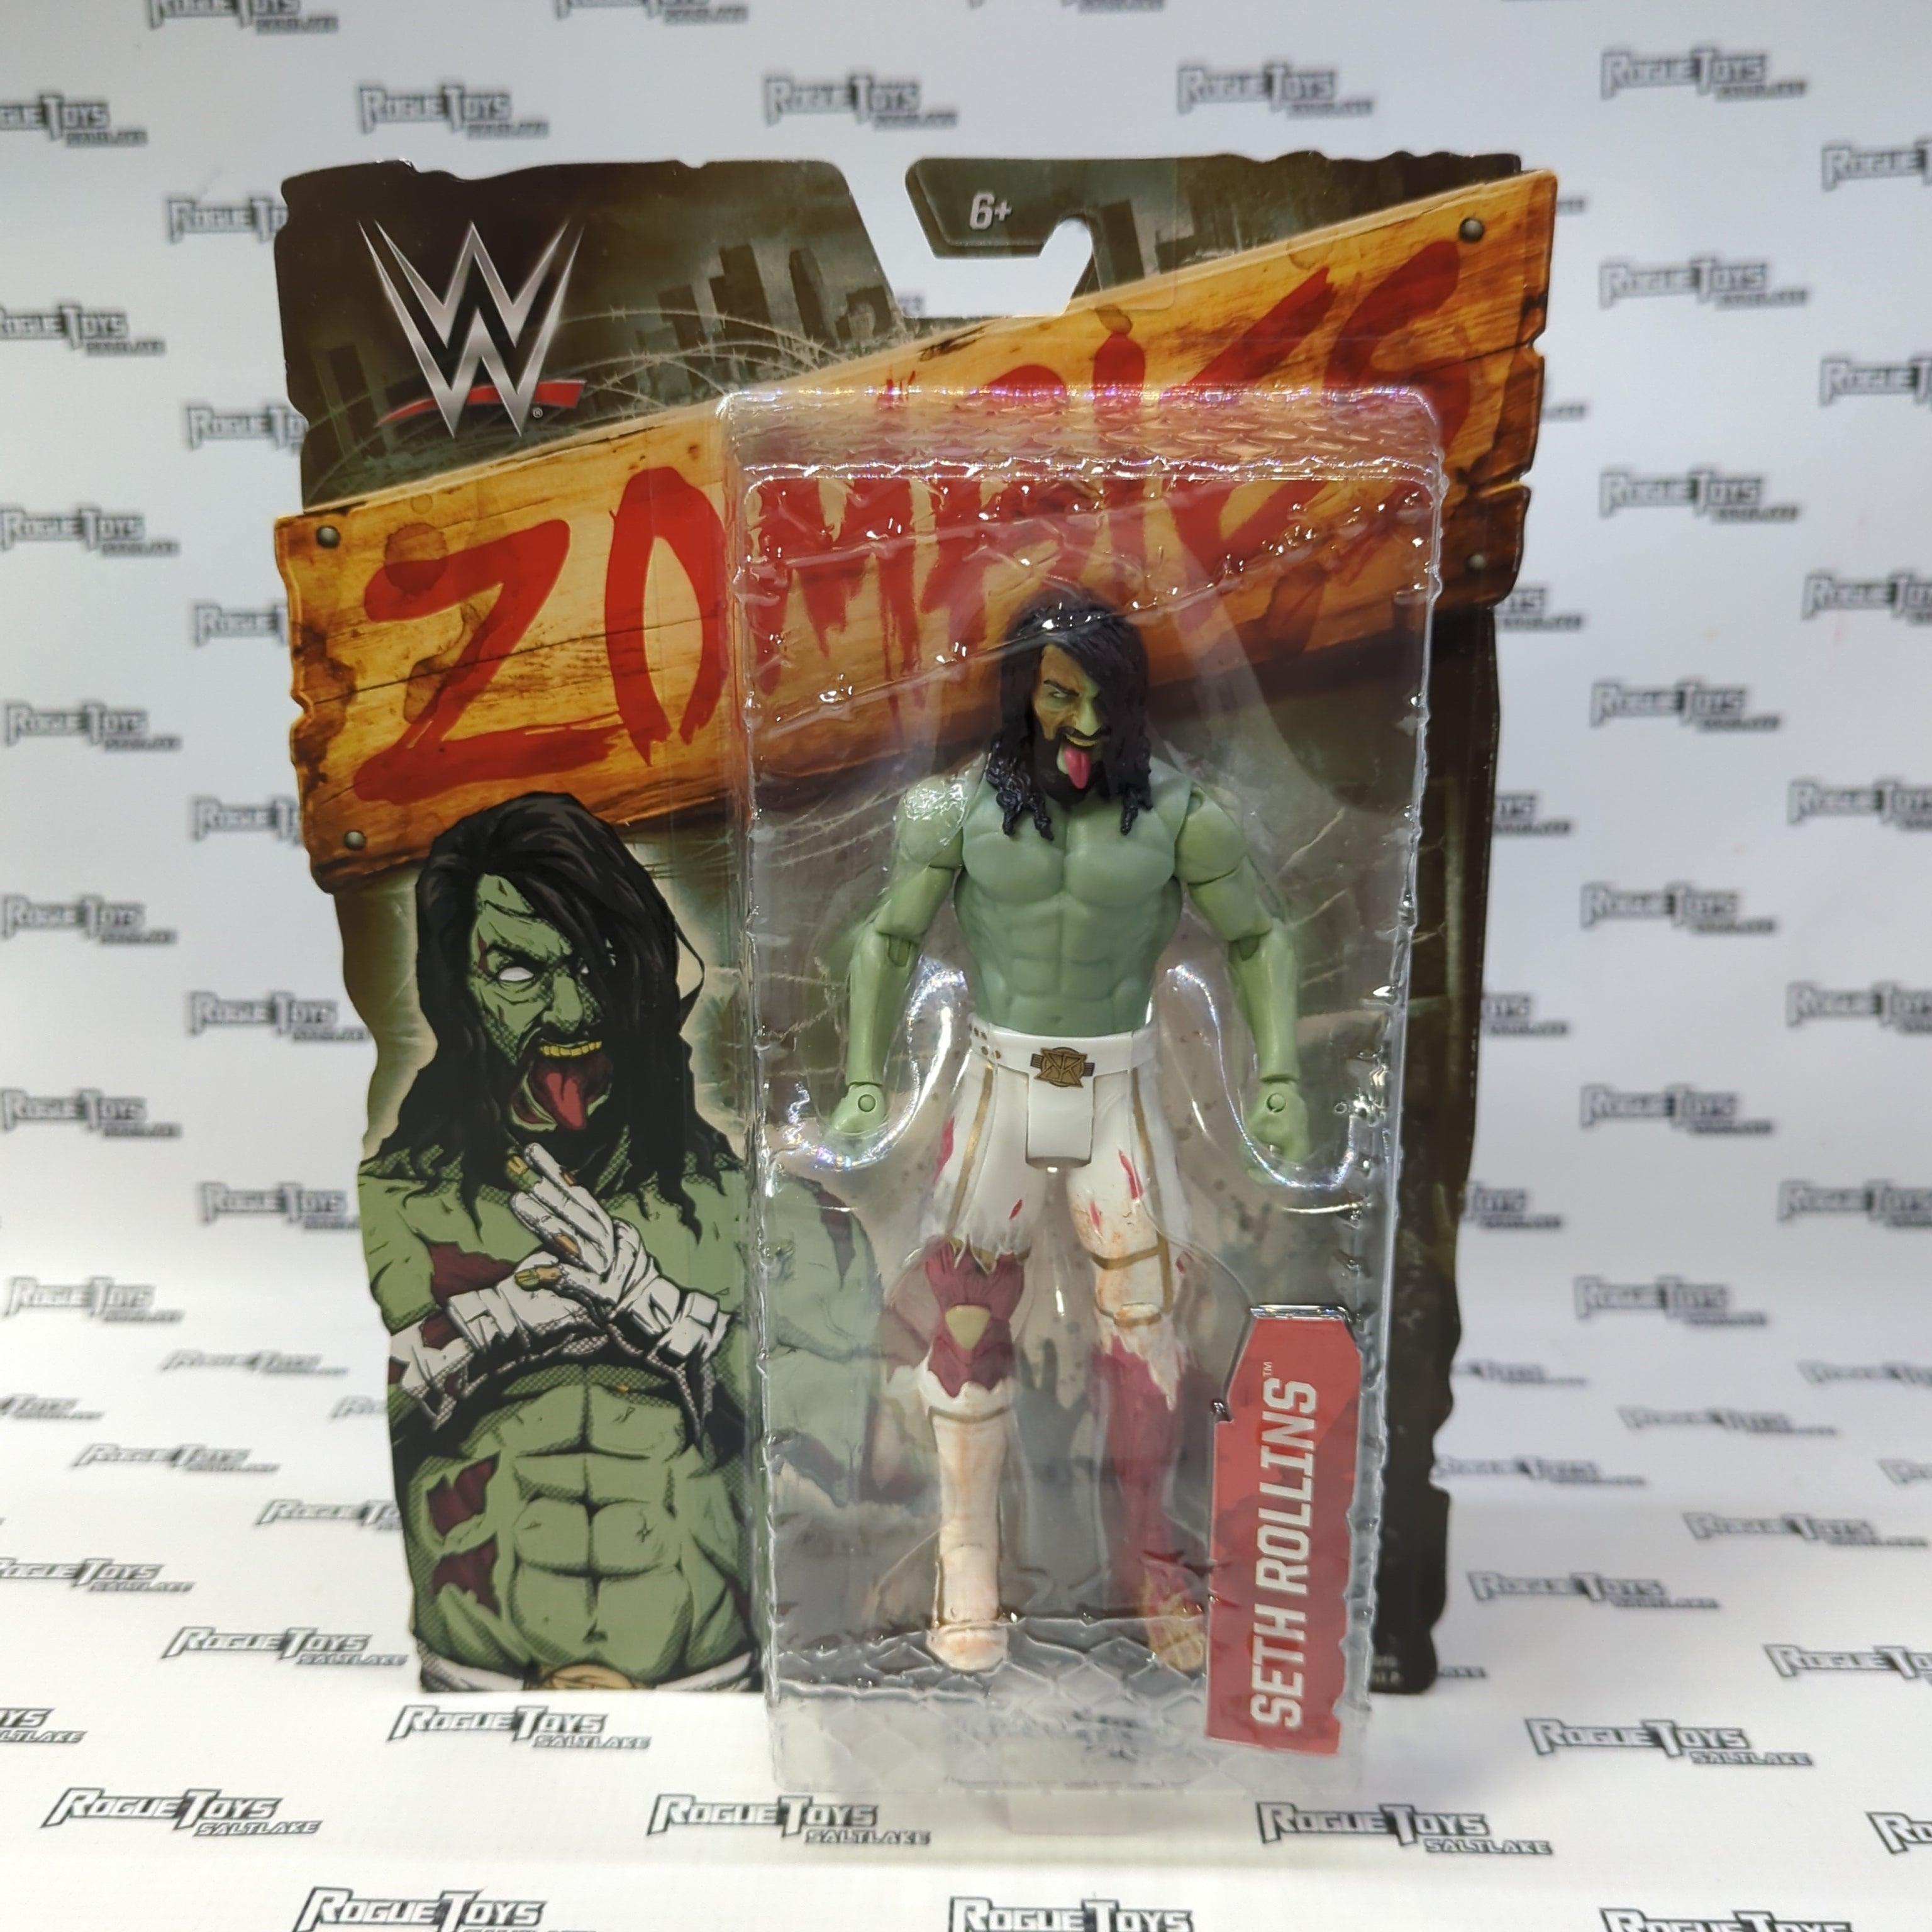 Mattel WWE Zombies Seth Rollins